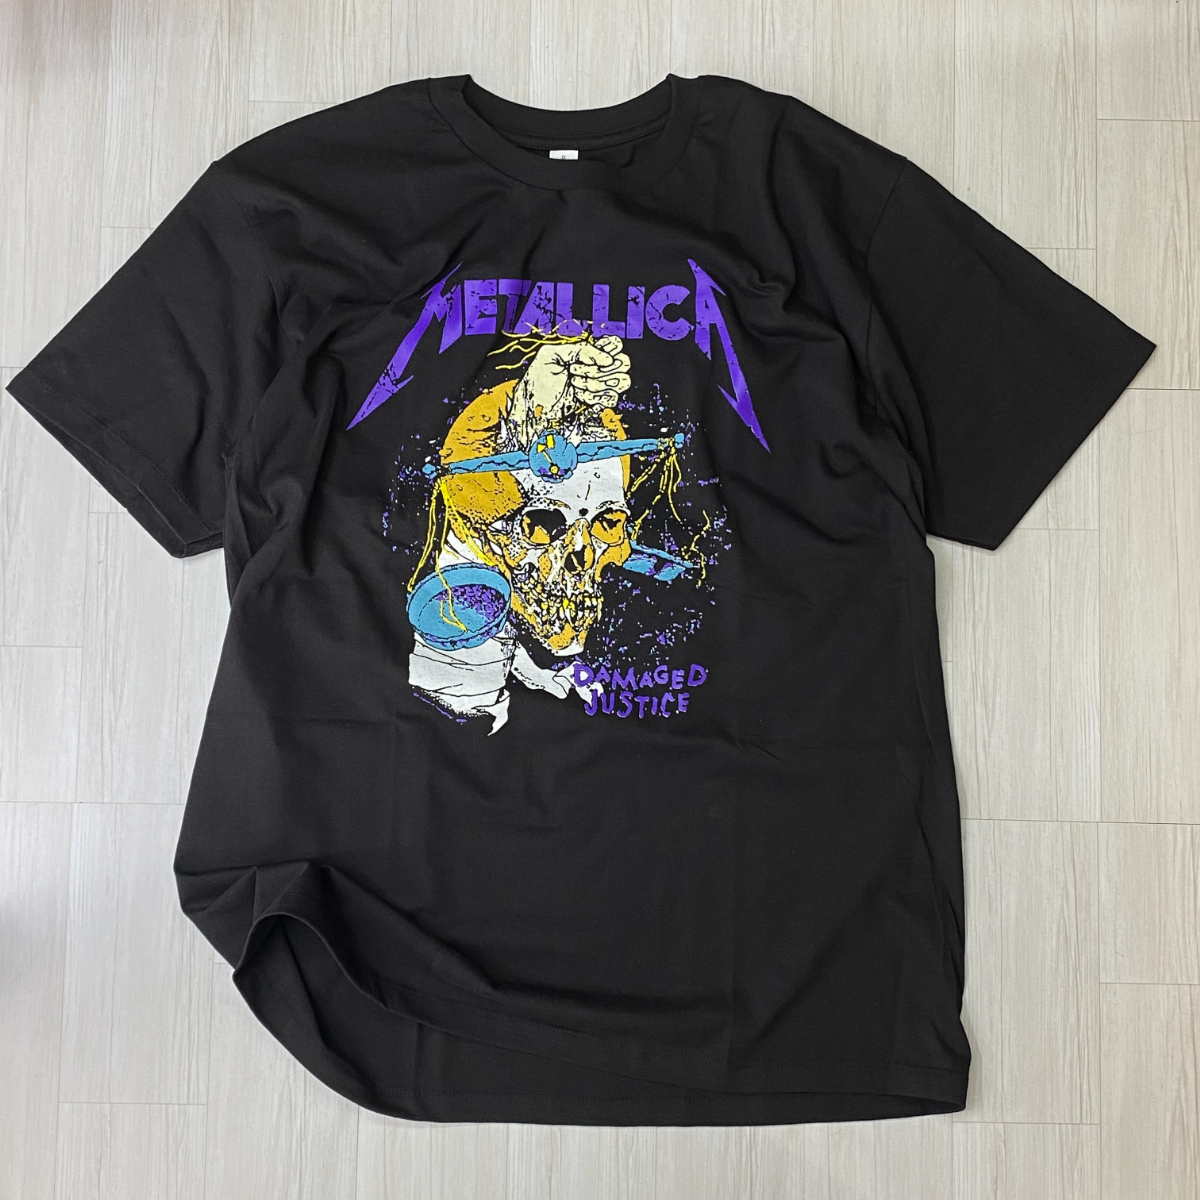 ロサンゼルス発 【2XL】 Metallica メタリカ Damaged Justice スカル 半袖 ヘビーウェイト Tシャツ 黒 バンドT ヘヴィメタルバンド USA規格